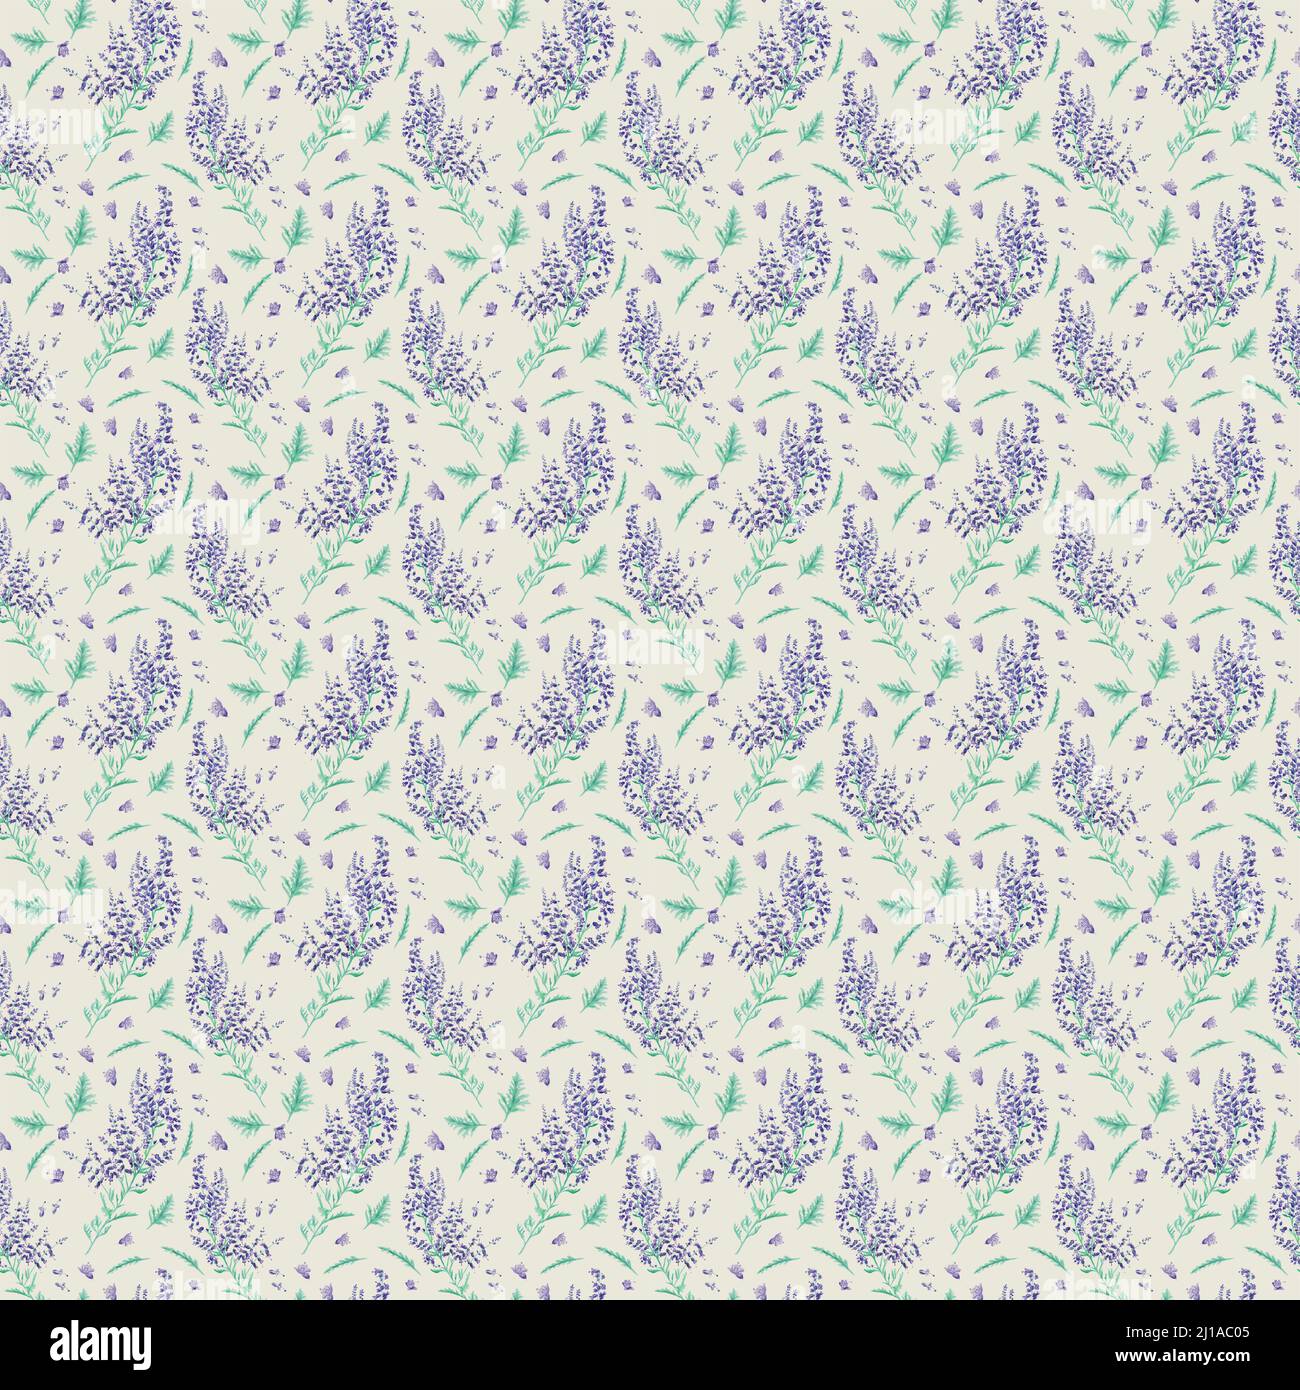 Hintergrund mit Lavendelblüten und Blätter für design Stockfoto